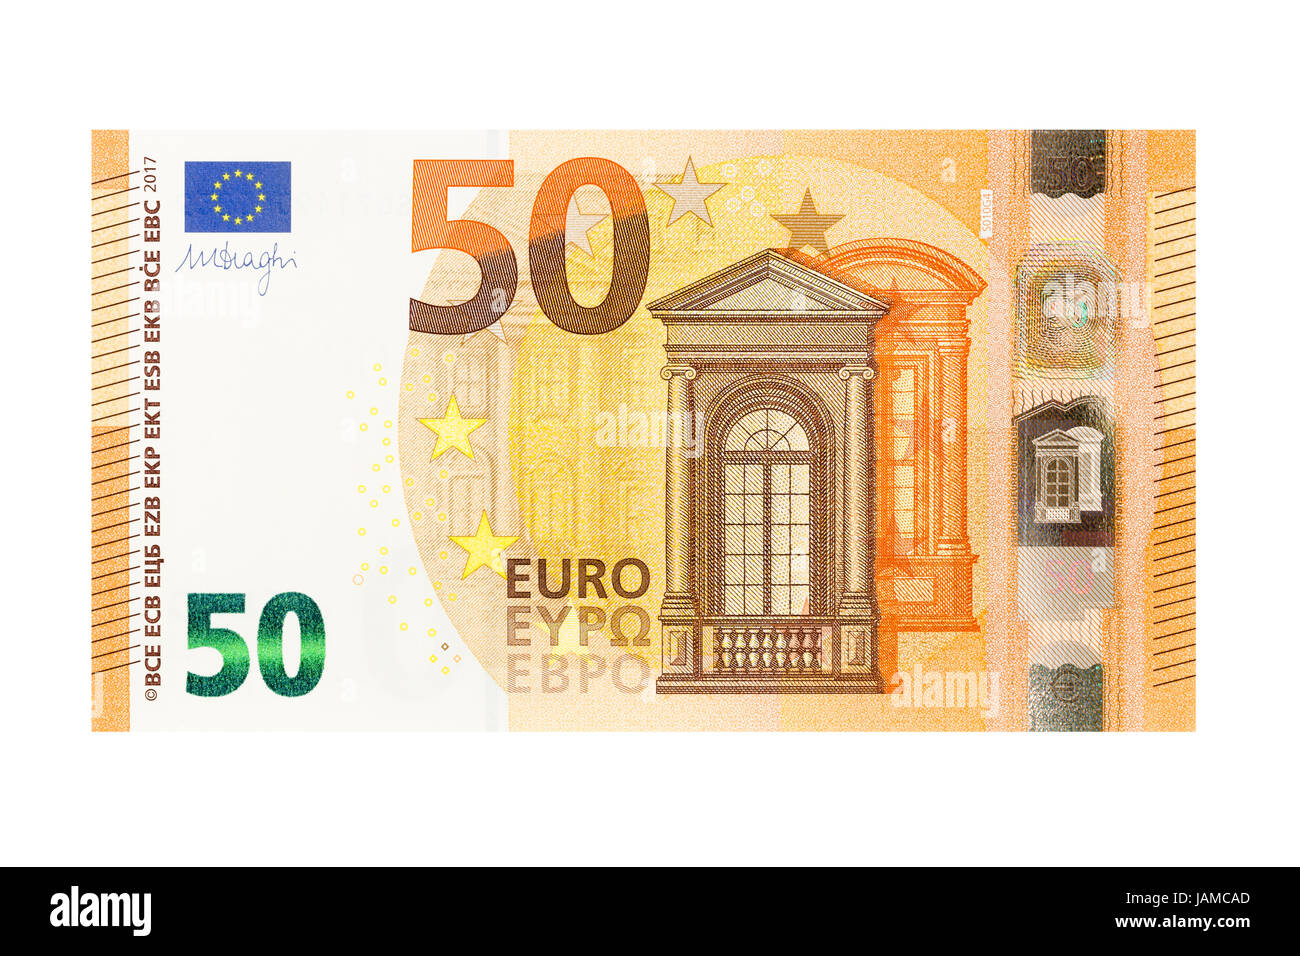 Размер евро купюры. Банкноты 50 евро. 50 Евро купюра. Купюра 50 евро Алигьера. Старая купюра 50 евро.